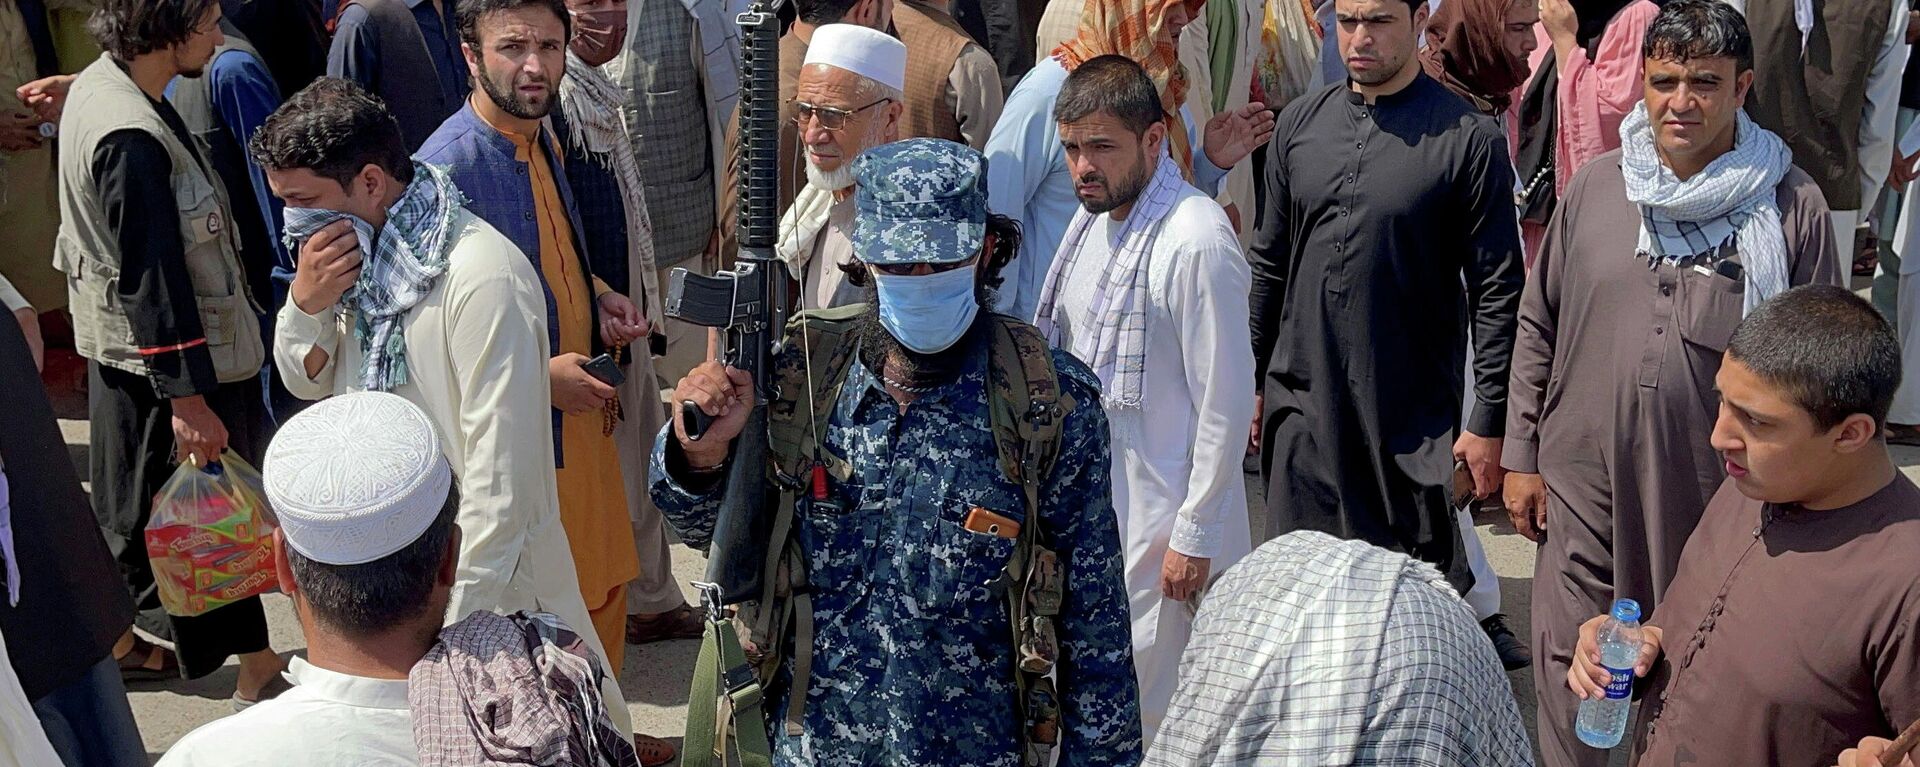 Un miembro de las fuerzas de seguridad talibanes hace la guardia en Kabul, Afganistán, 4 de septiembre de 2021 - Sputnik Mundo, 1920, 10.09.2021